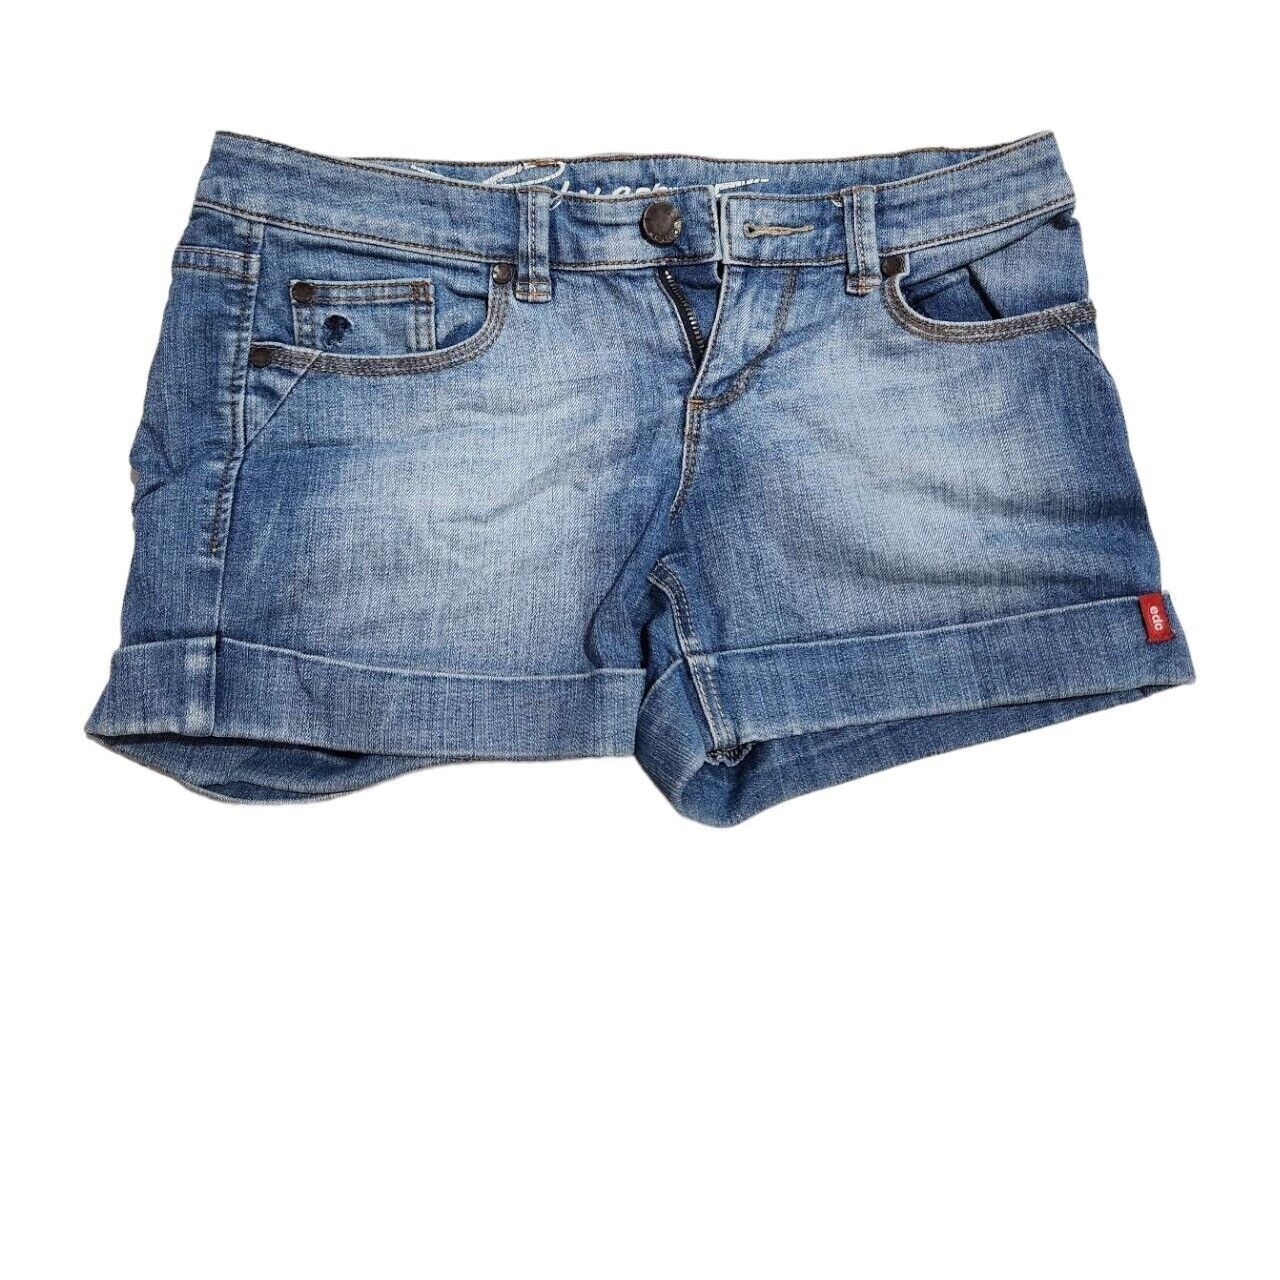 Esprit Blue Jeans Short Pants